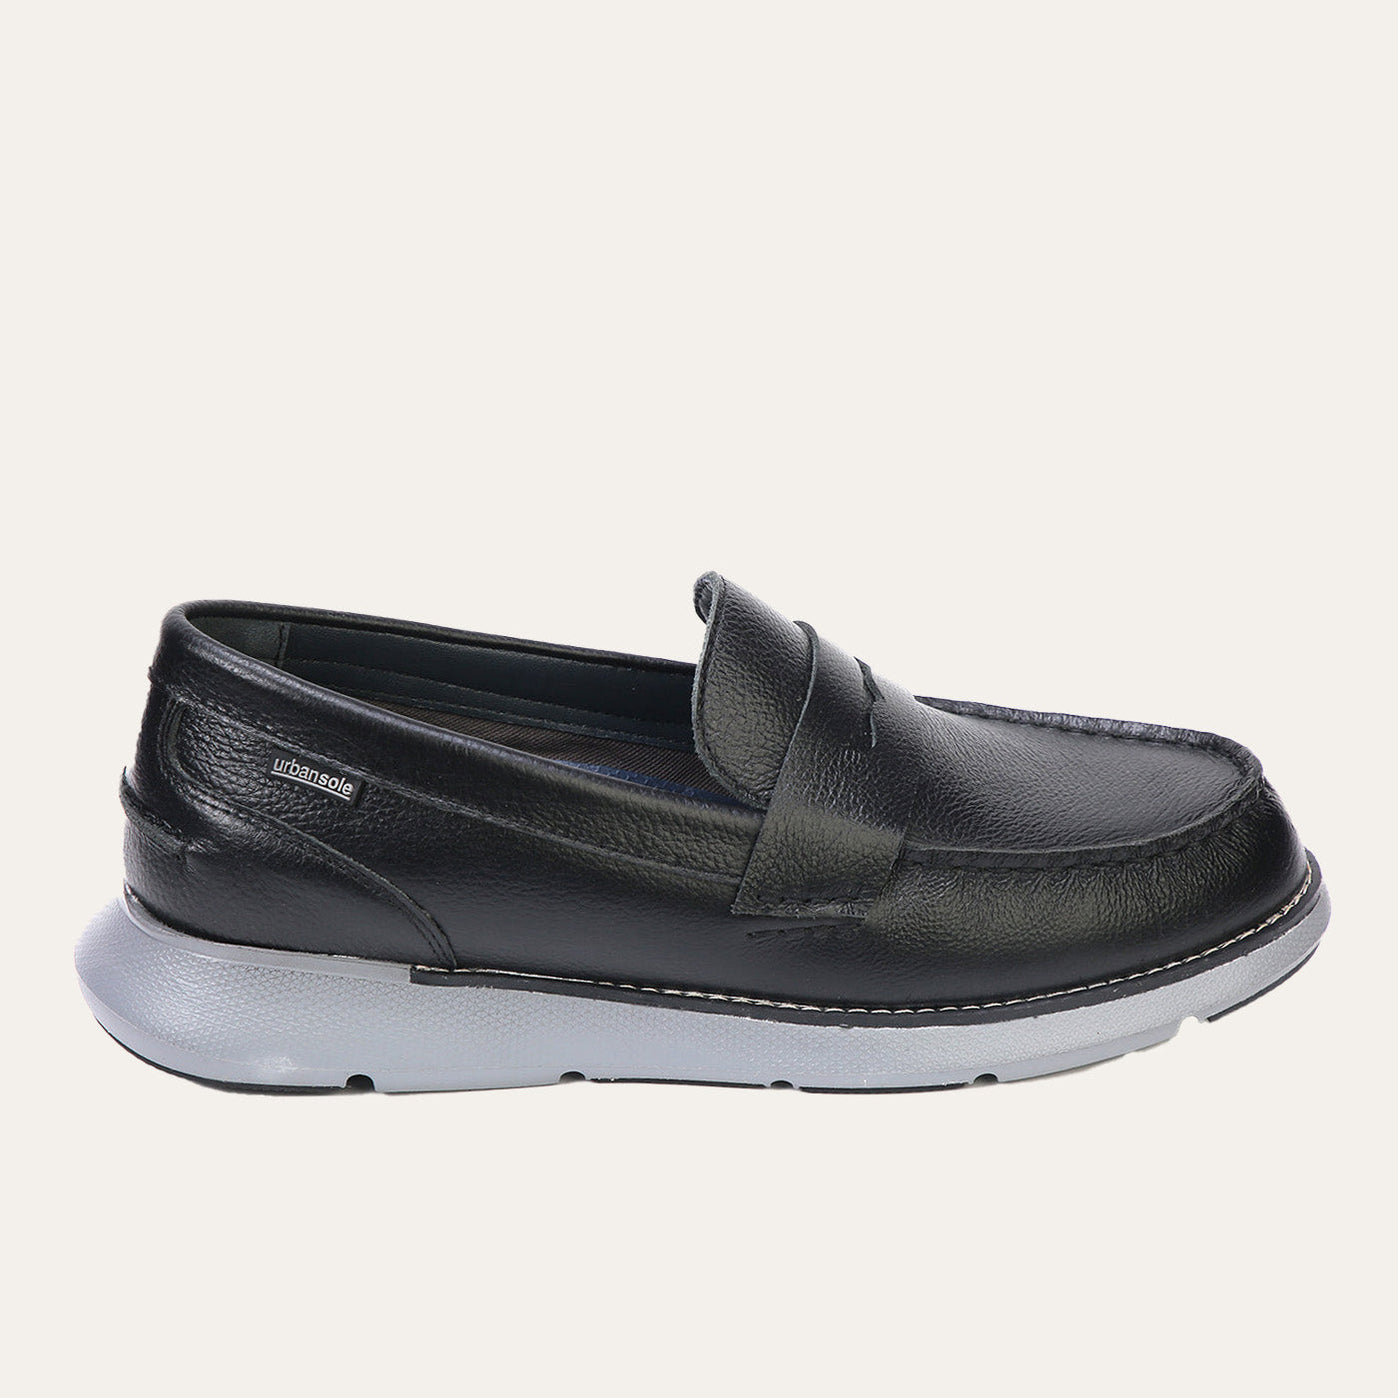 Buy Men Casual Shoes Online in Pakistan | Urbansole — Urbansole